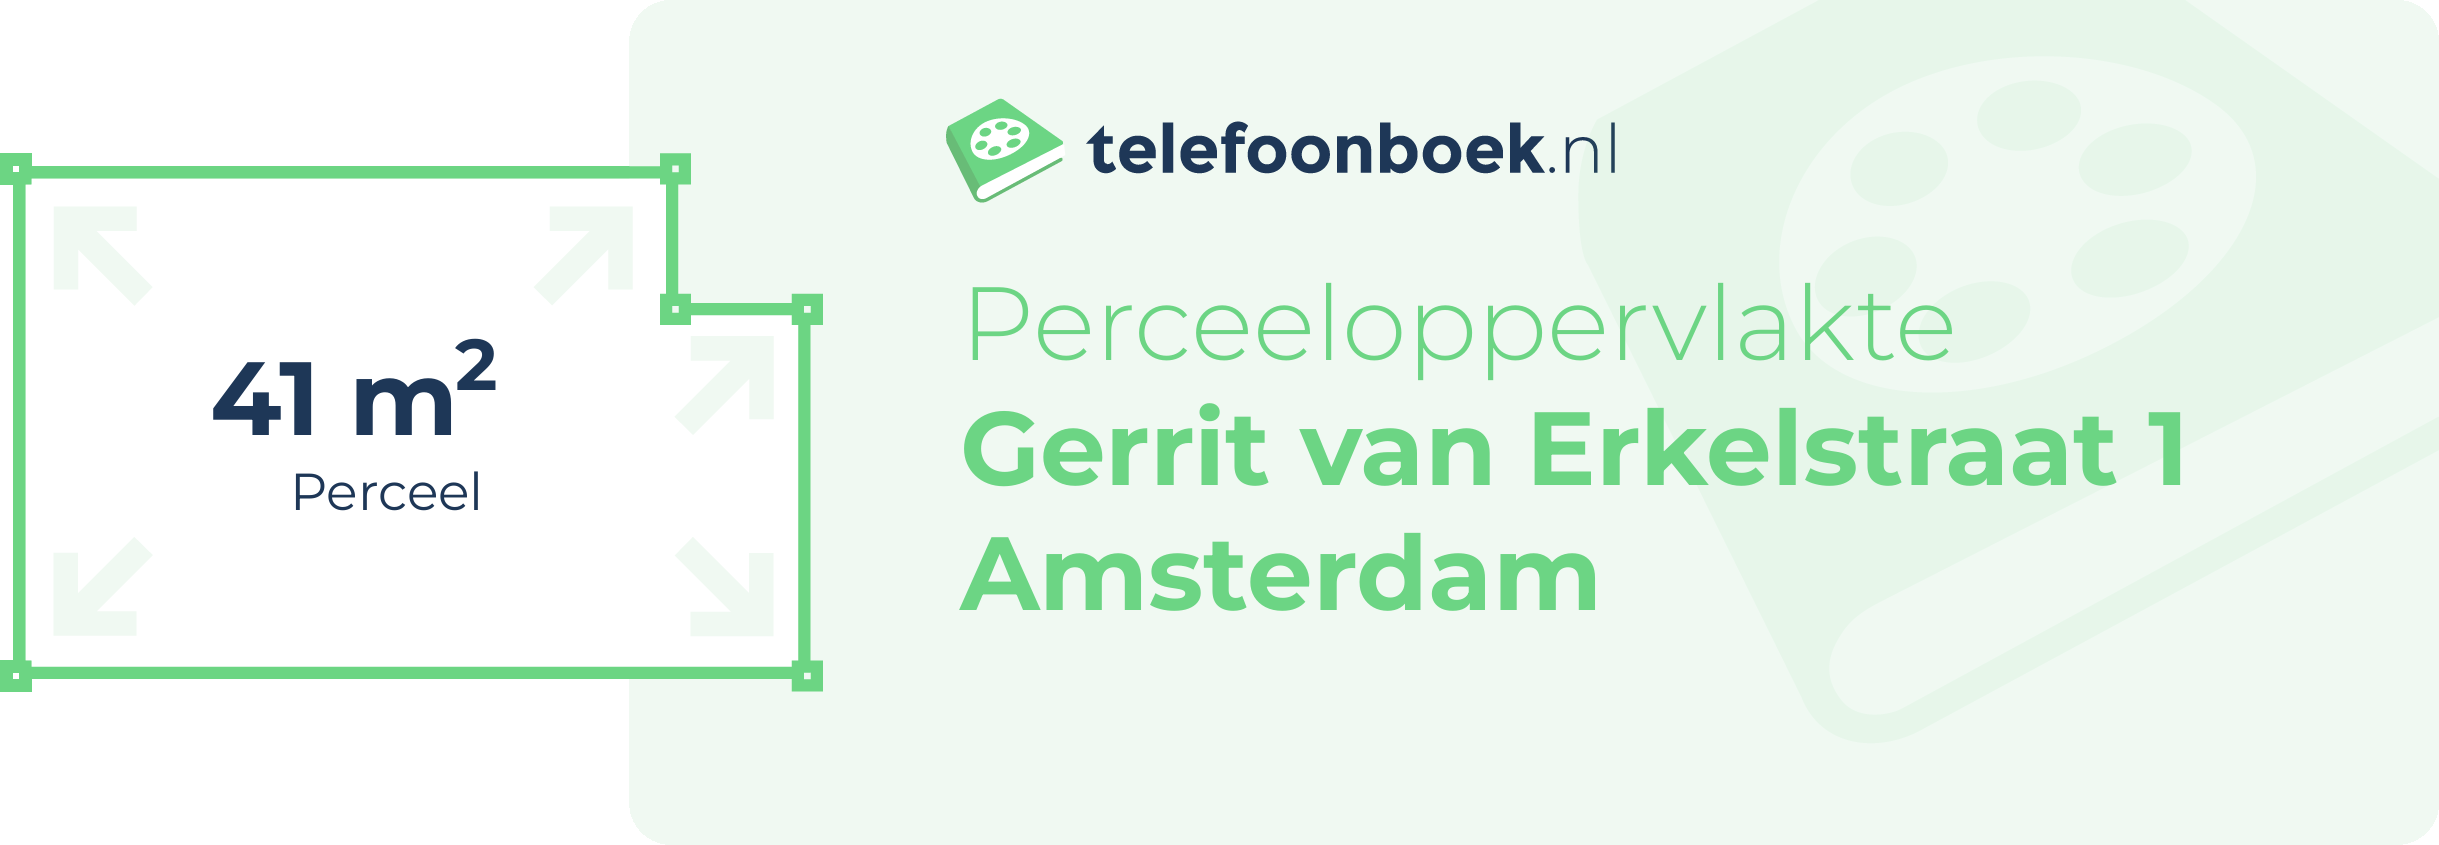 Perceeloppervlakte Gerrit Van Erkelstraat 1 Amsterdam